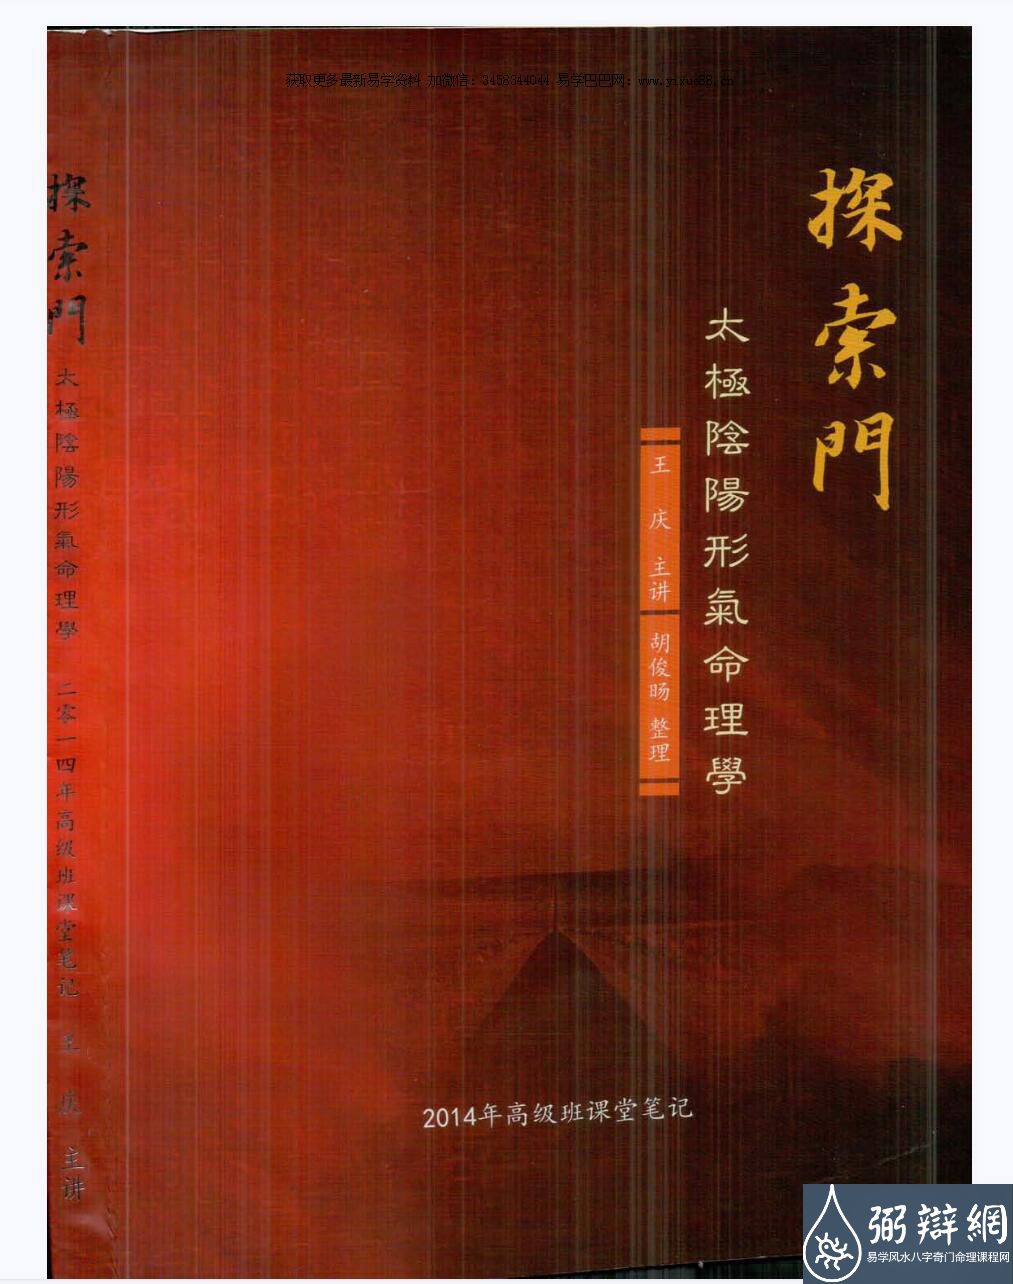 王庆 2014年探索门太极阴阳形气命理学高级班课堂笔记350页